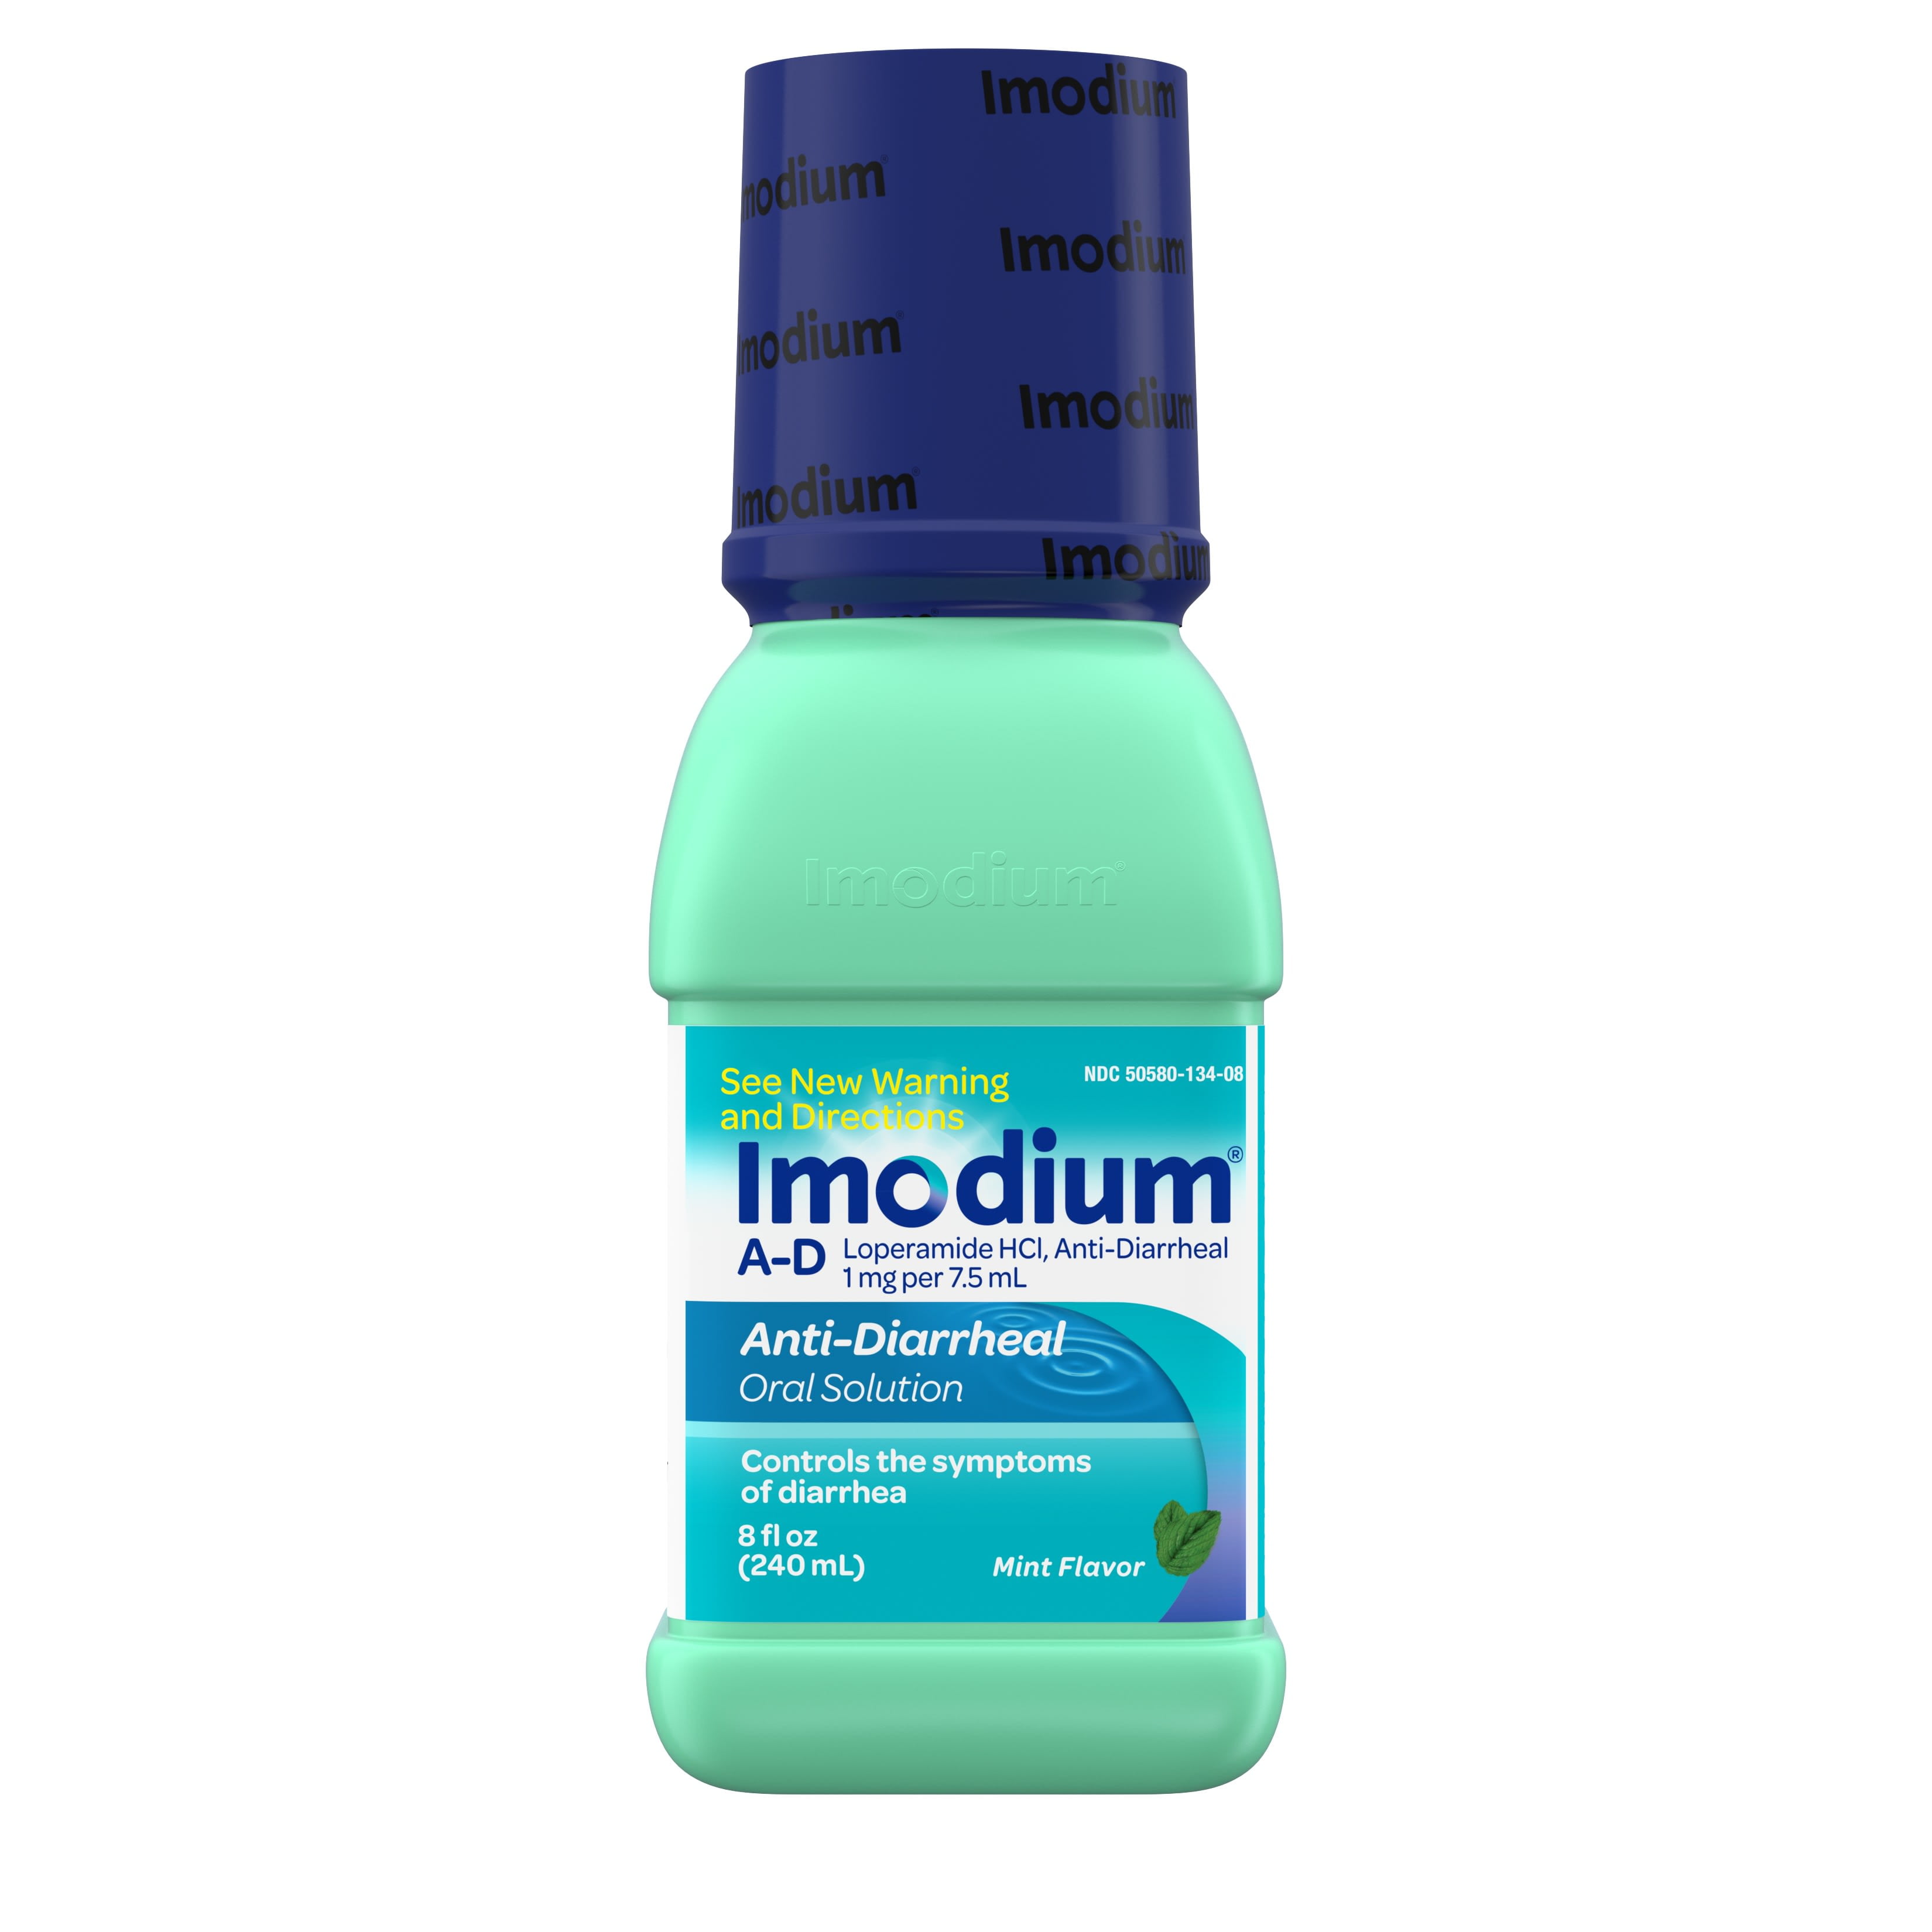 imodium liquid